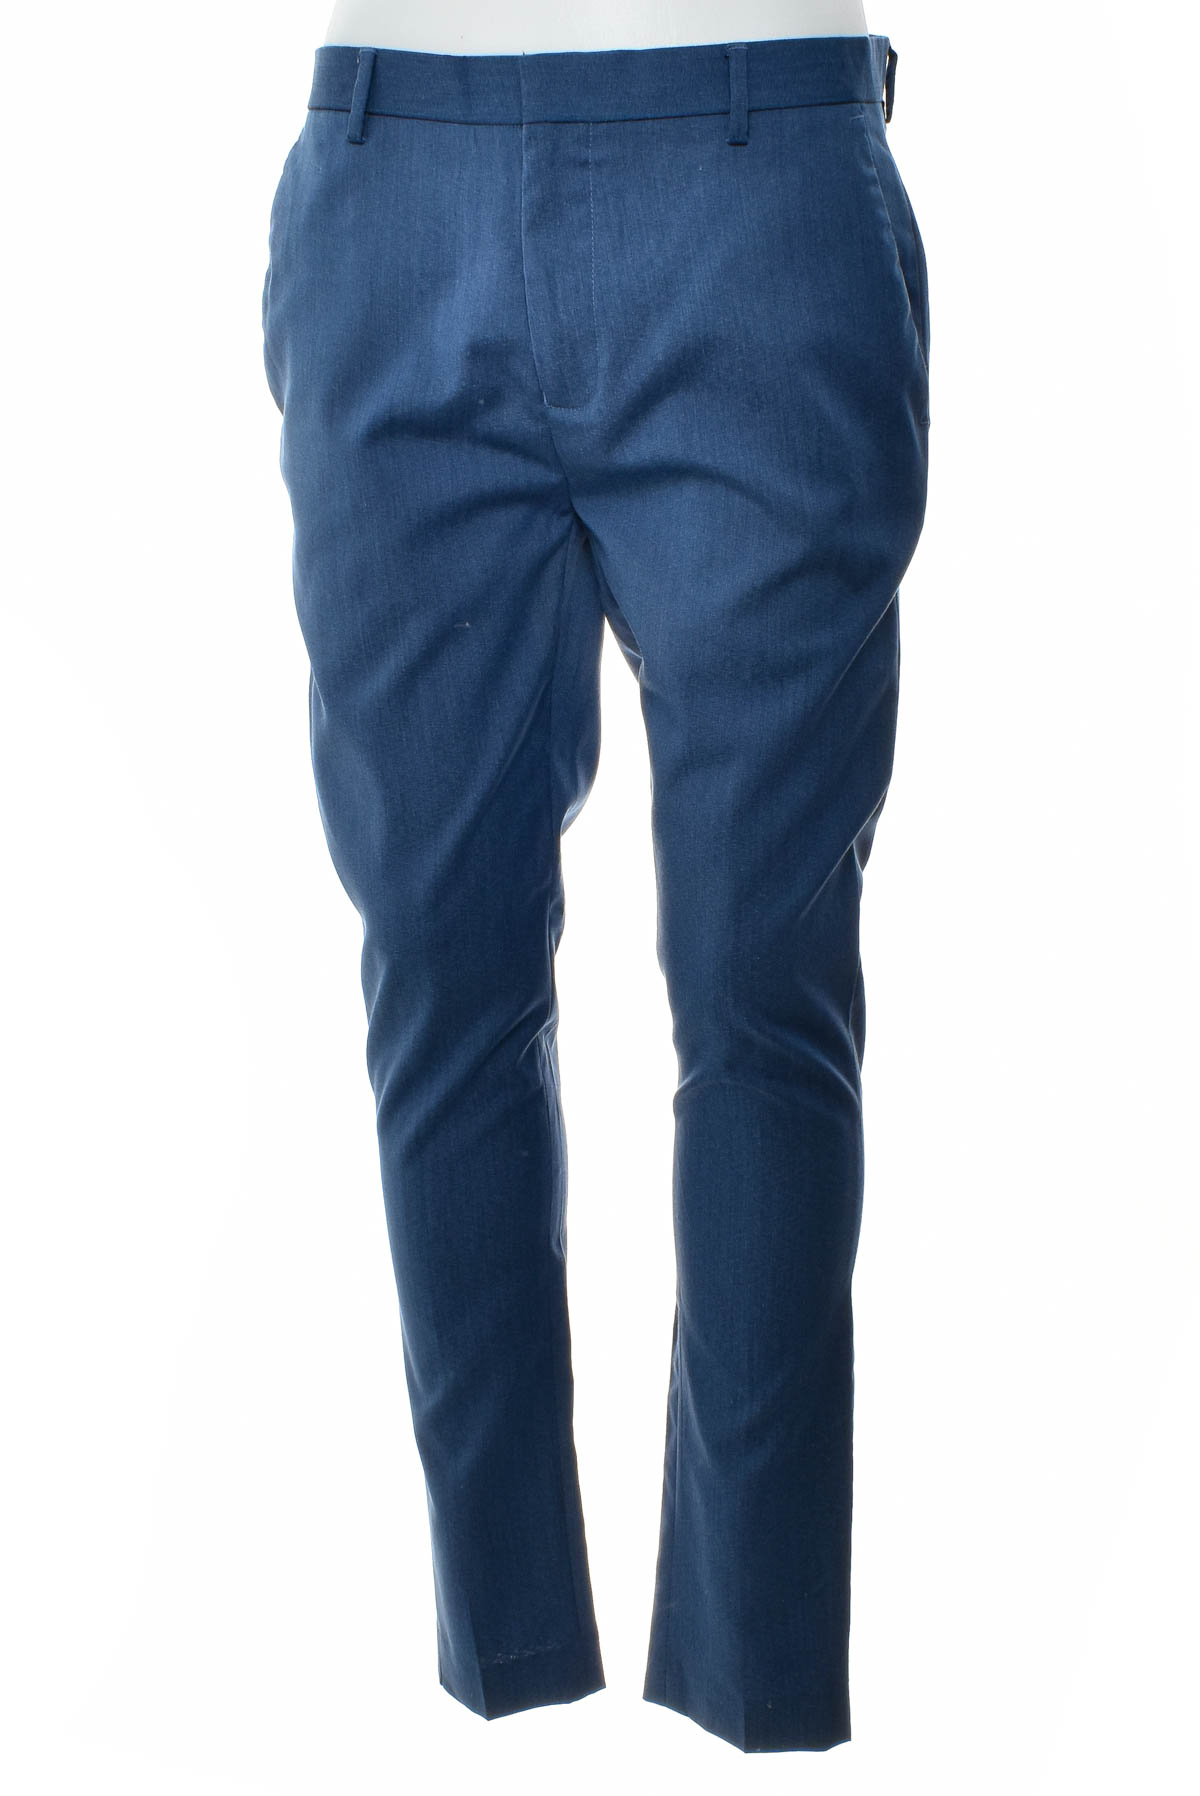 Men's trousers - Asos - 0